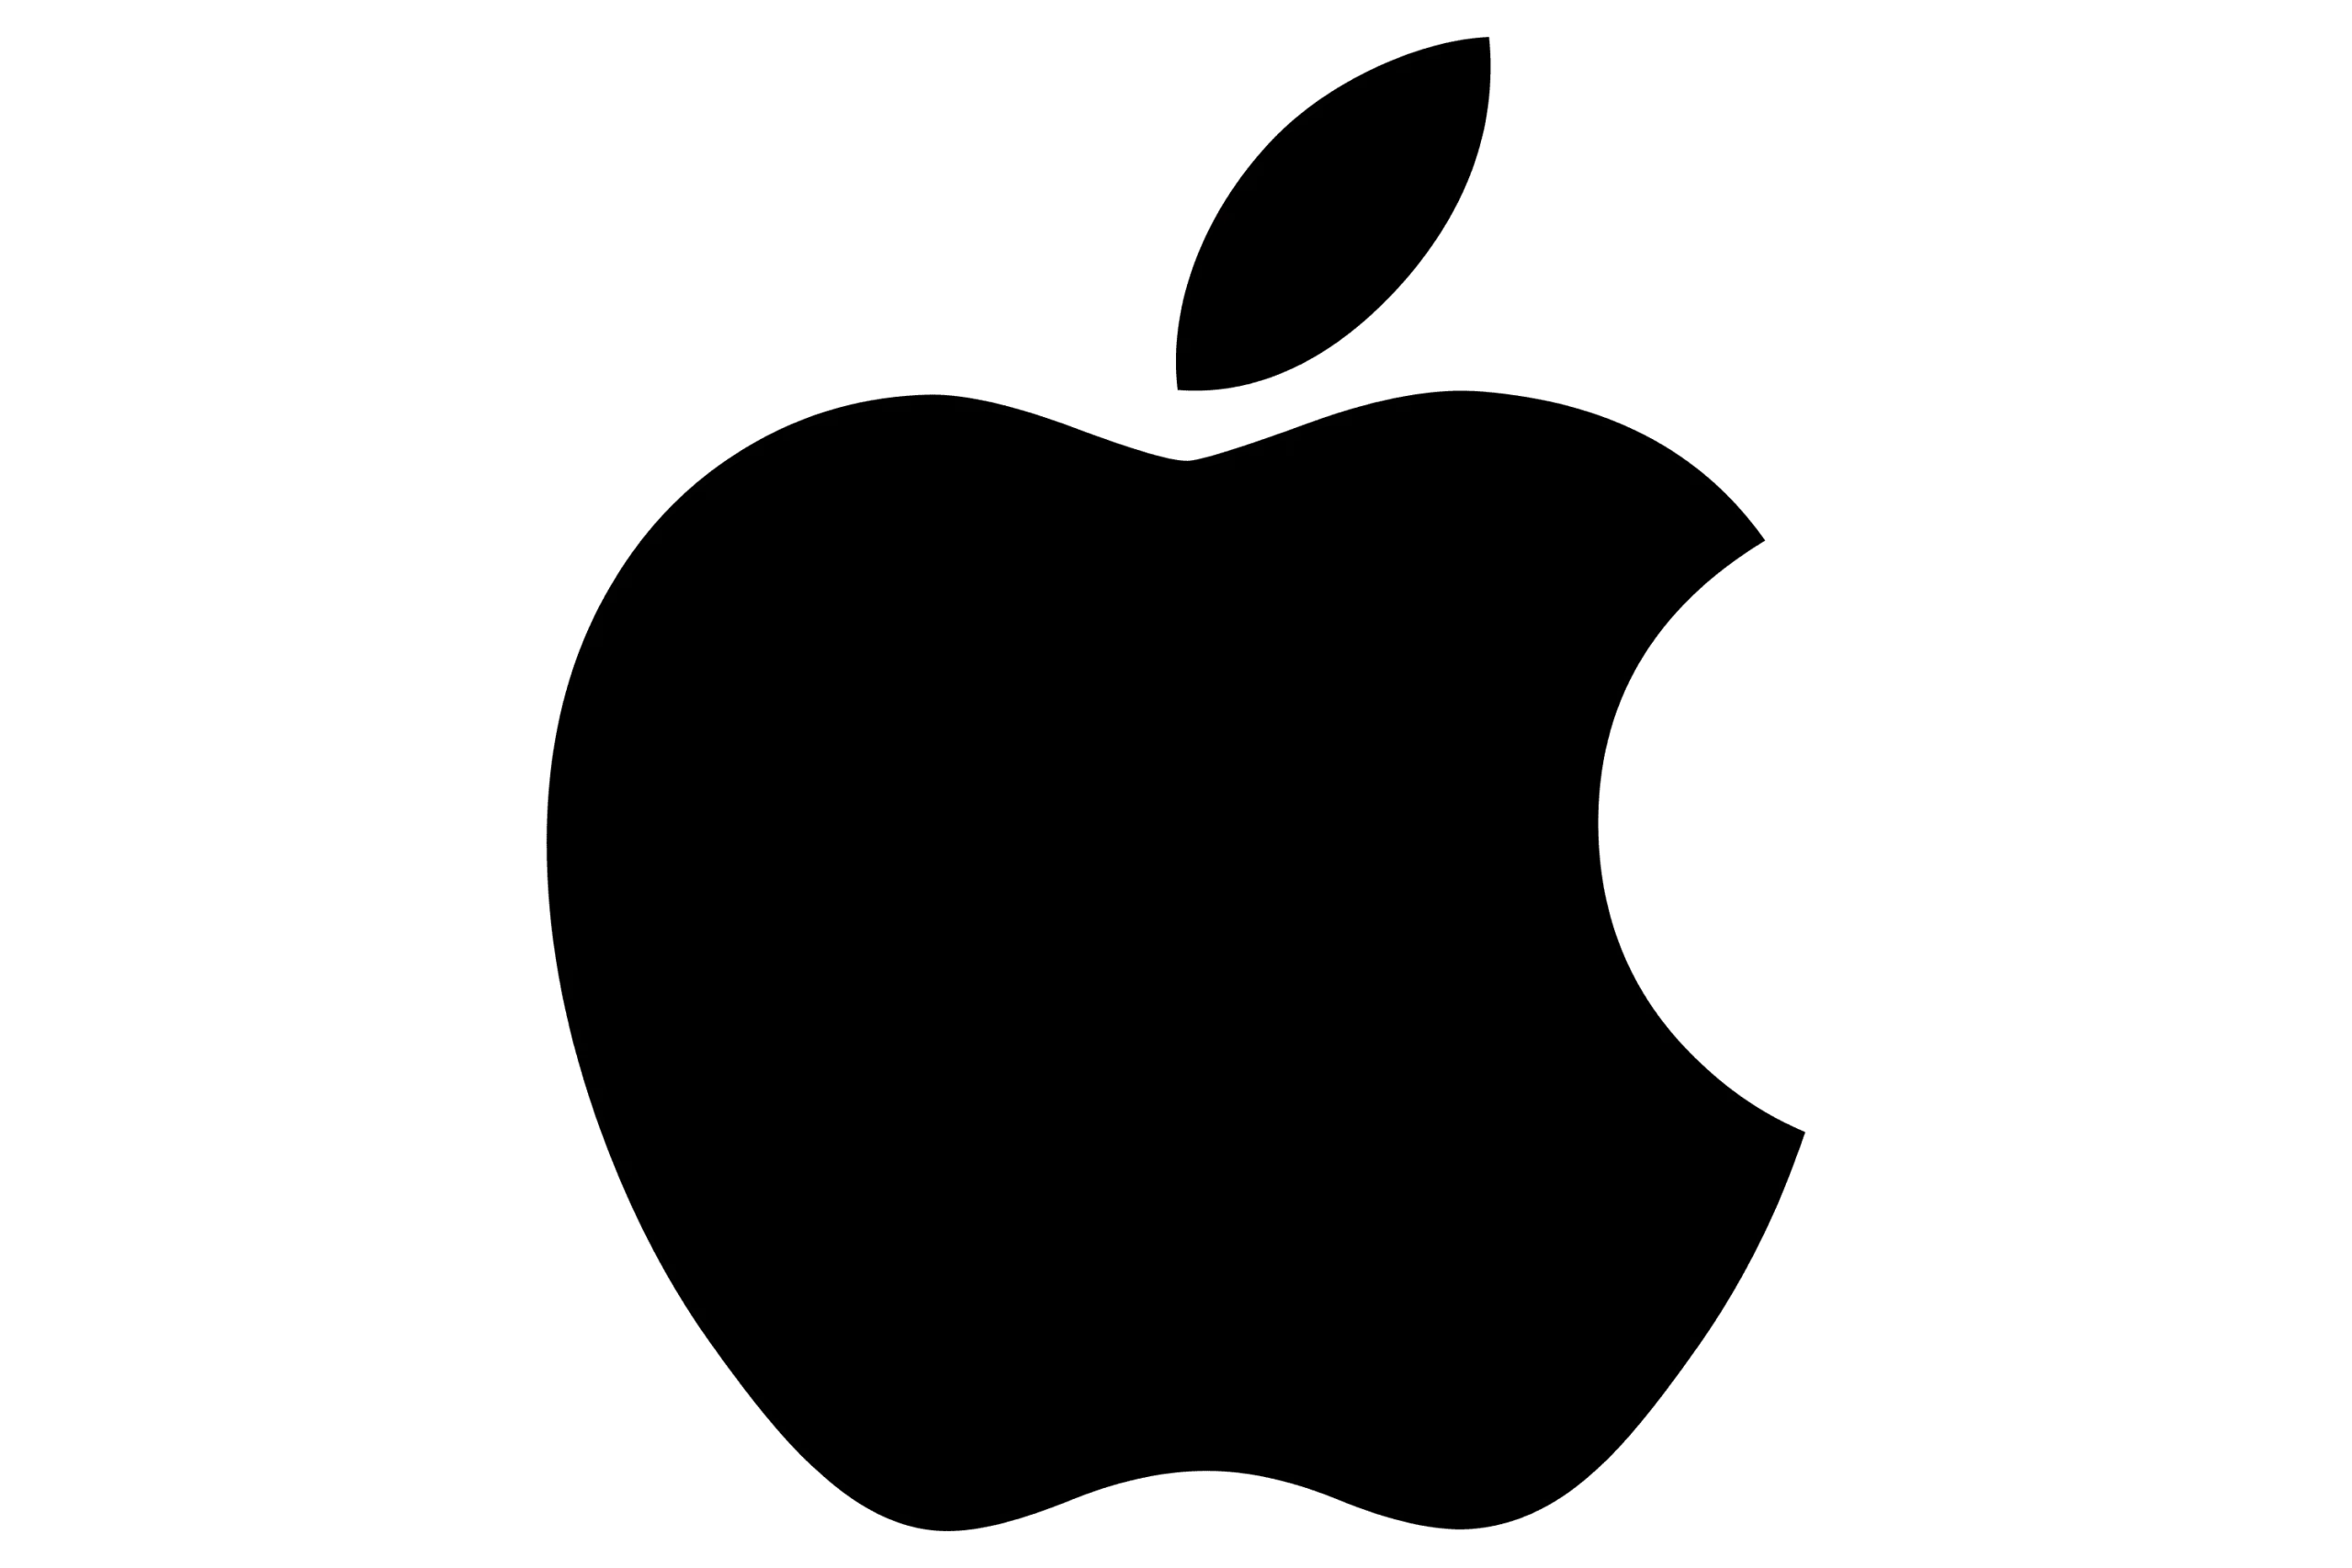 Logo de la marque d'objets électronique Apple